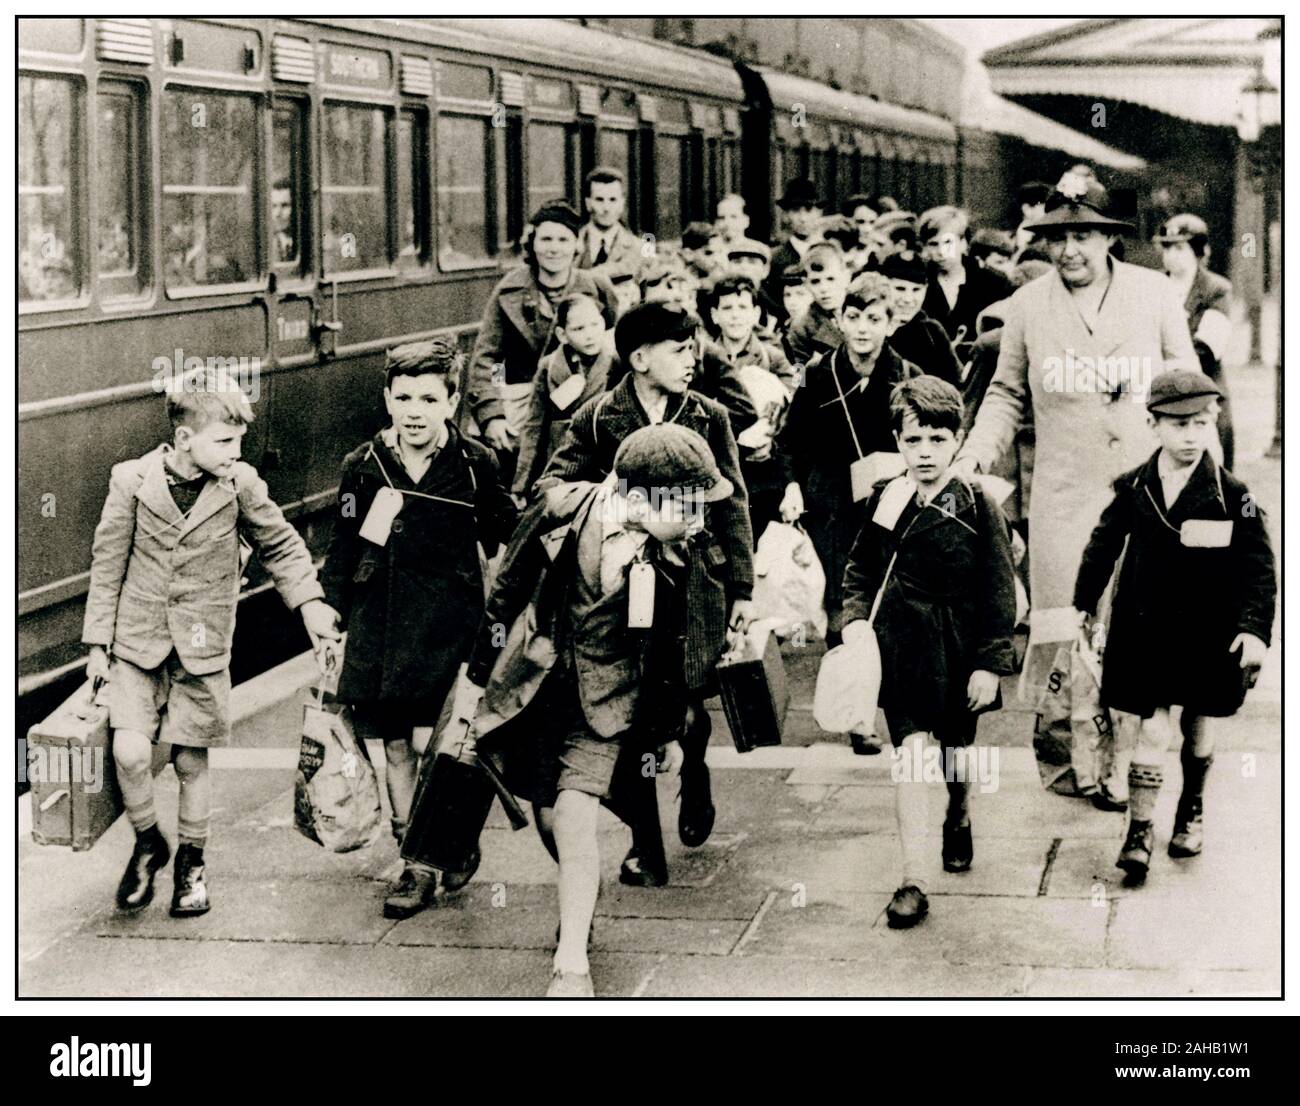 Blitz Seconde Guerre mondiale WW2 des enfants évacués avec des valises portant des étiquettes de nom à la gare de Moor Street à Birmingham, en quittant pour un hébergement rural pour éviter le bombardement éclair par l'Allemagne nazie des villes britanniques septembre 1939. Enfants de l'évacuation en temps de guerre, des millions d'enfants de villes britanniques ont été évacués vers des endroits plus sûrs pendant la Seconde Guerre mondiale. WW2 Banque D'Images